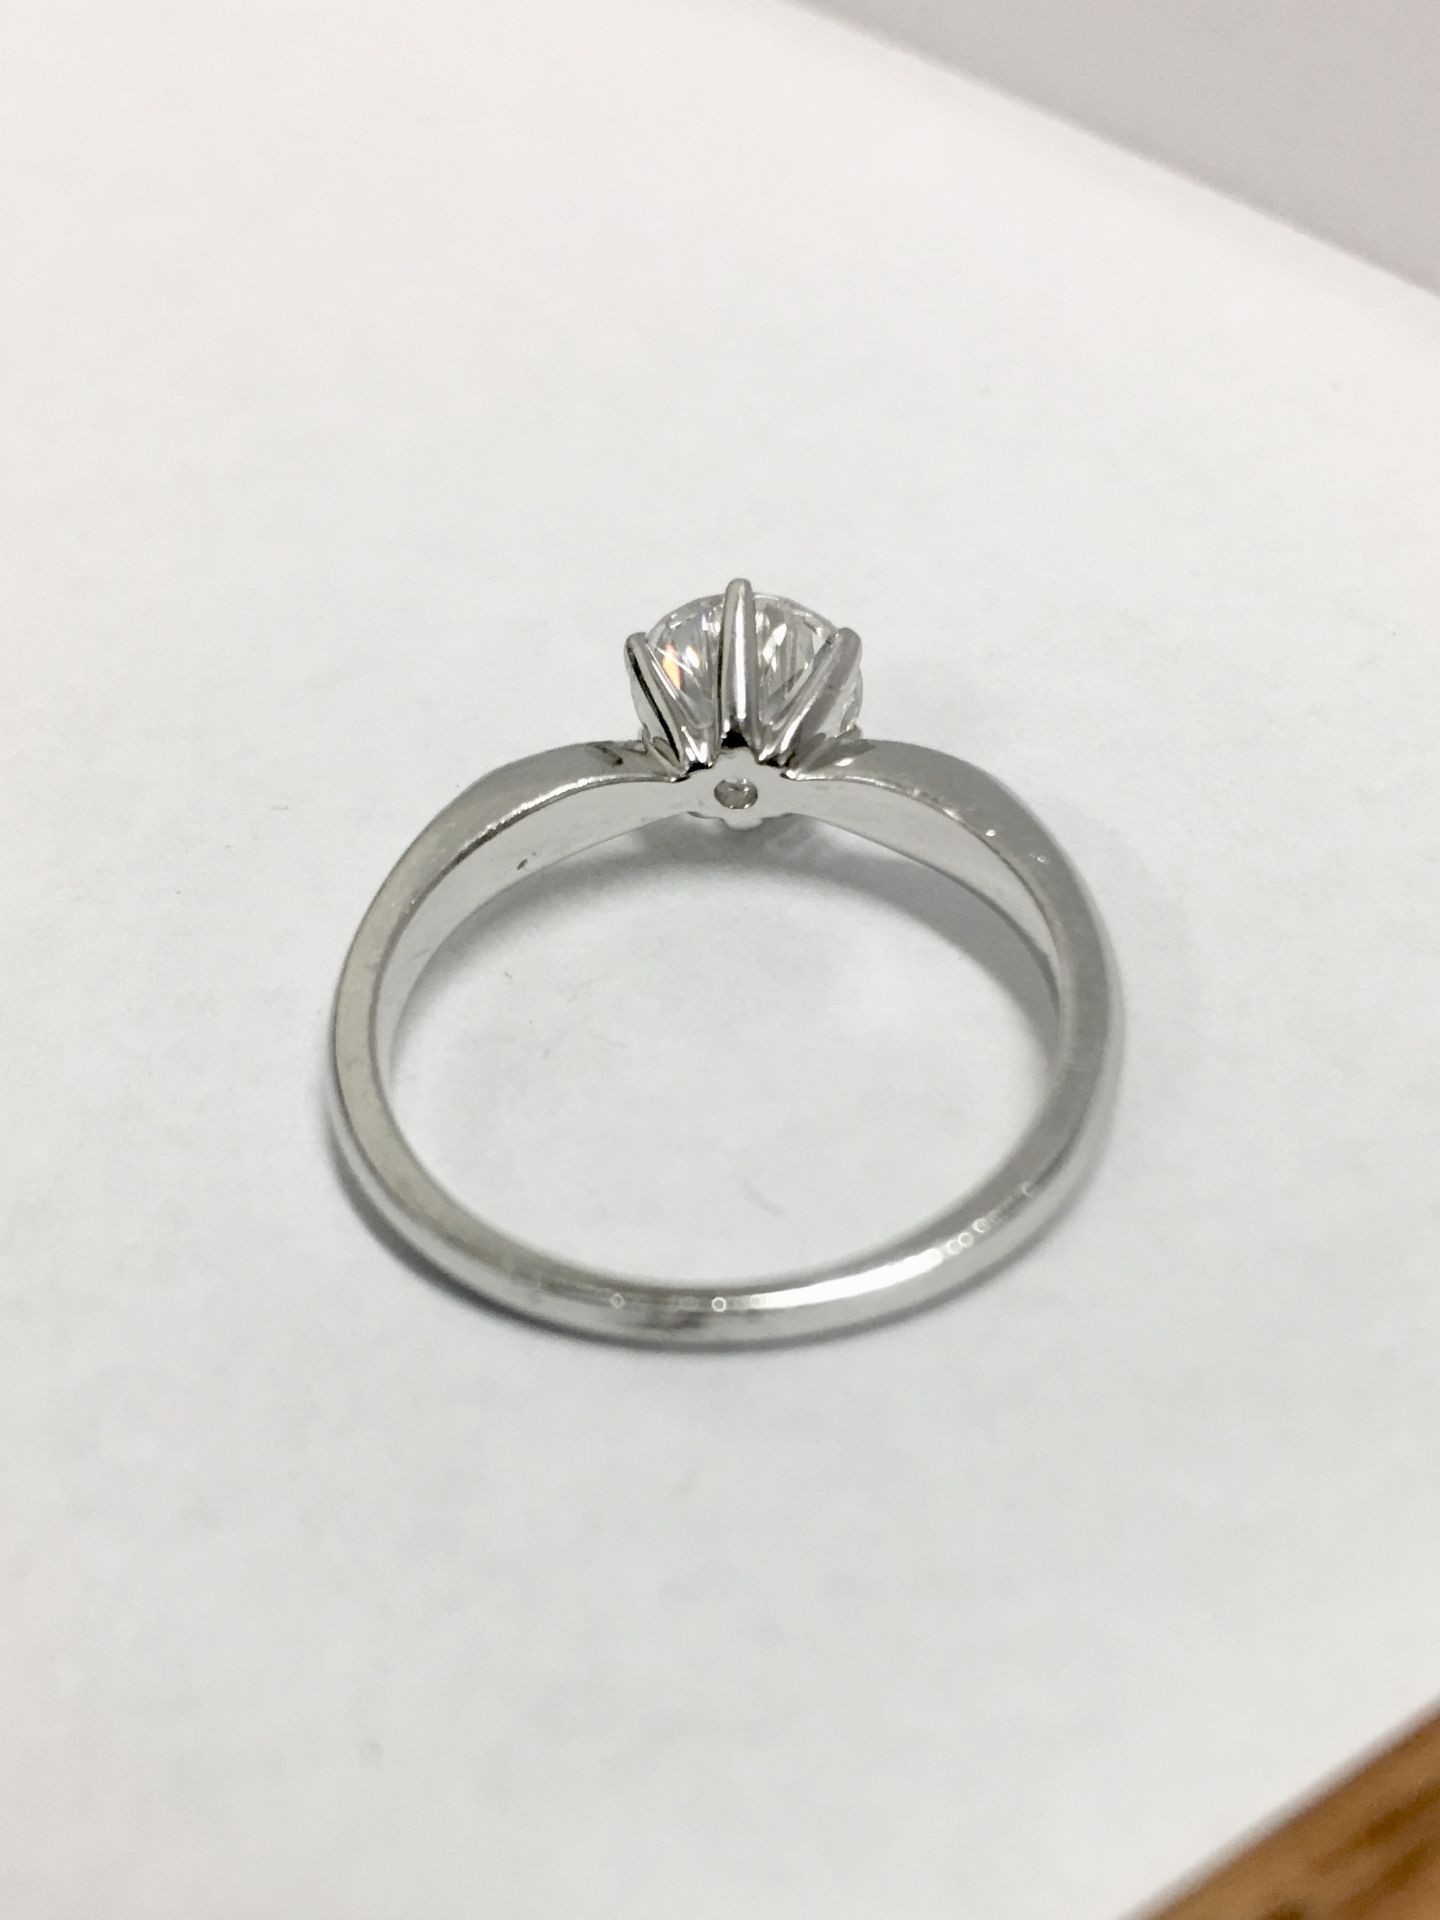 Platinum diamond solitaire ring,0.50ct brilliant cut diamond D colour vs clarity,platinum diamond - Image 4 of 5